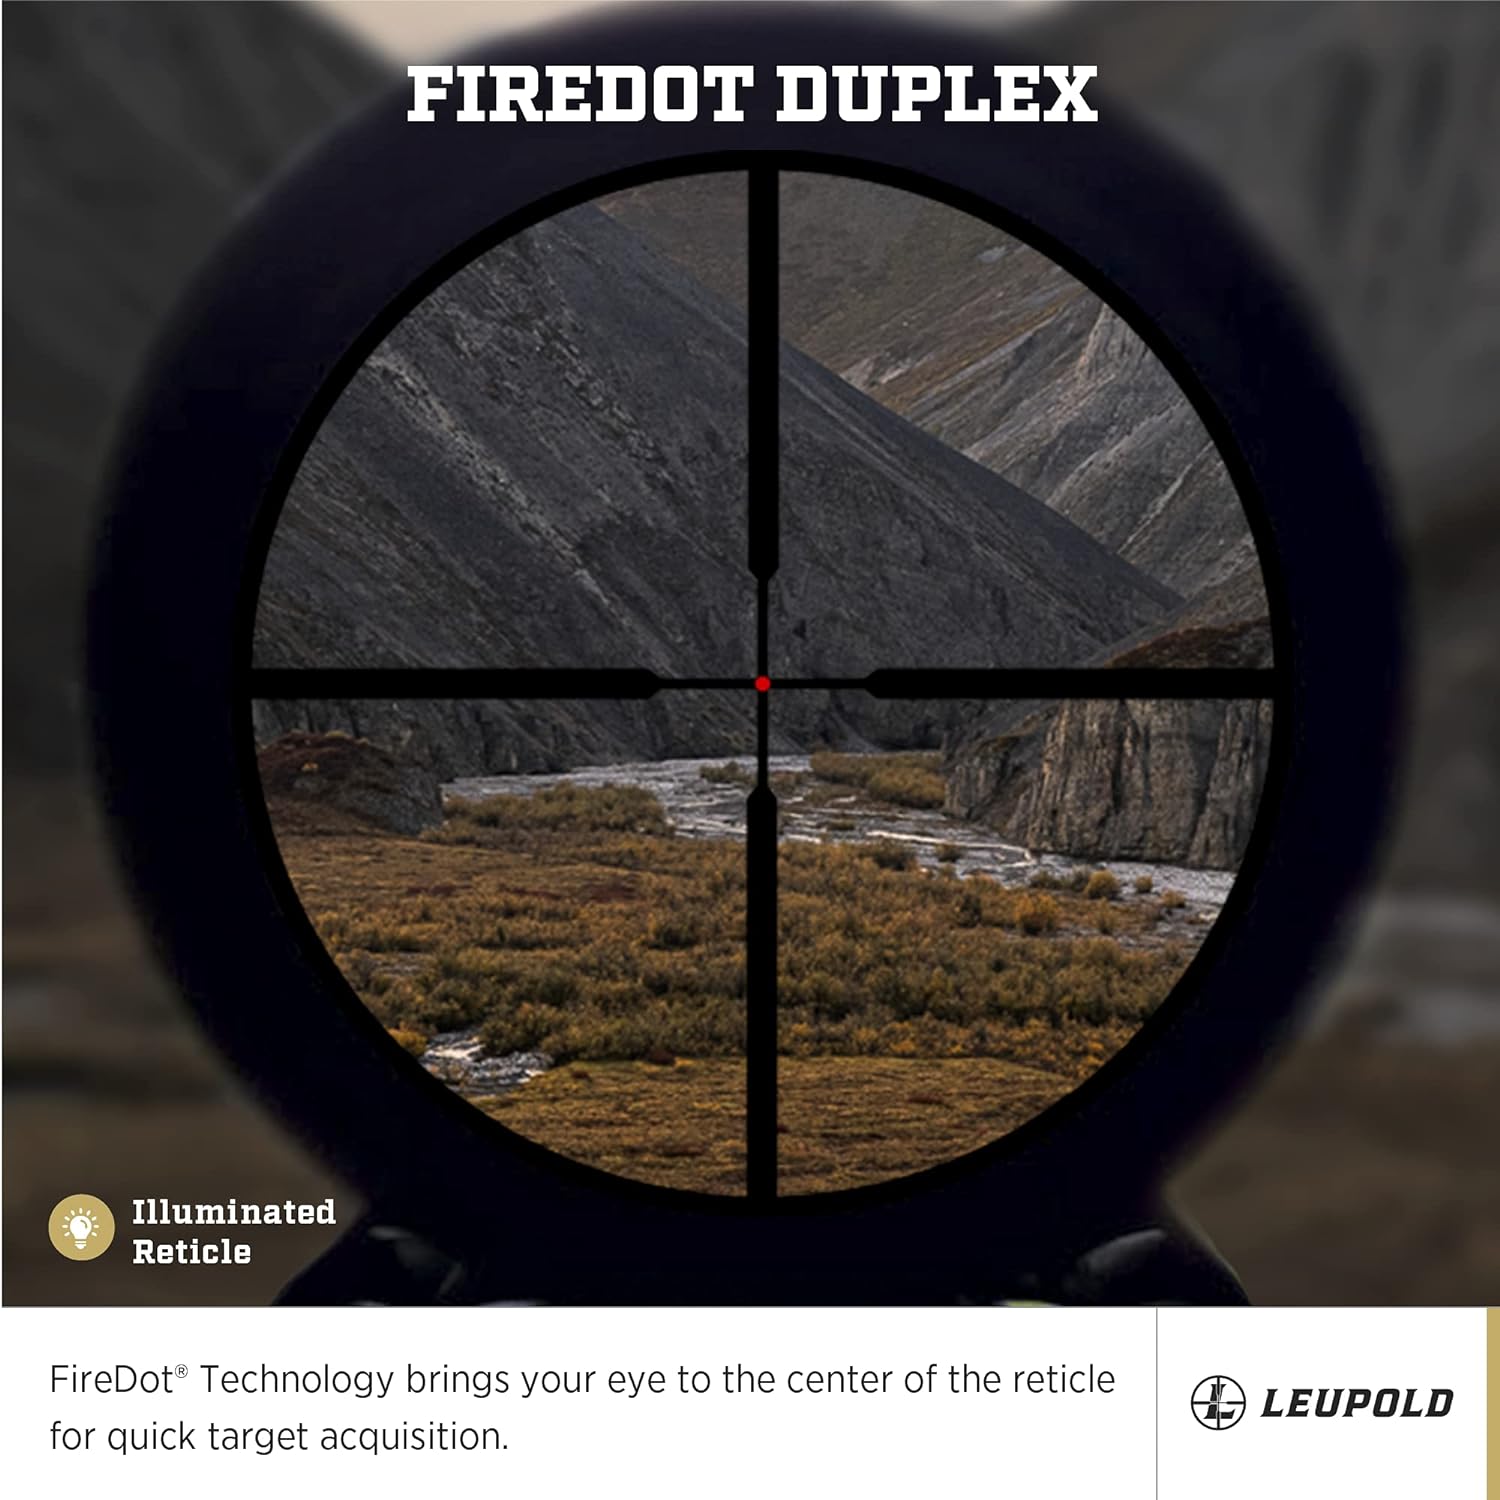 Leupold VX-5HD 1-5x24mm Riflescope - Leupold VX-5HD 1-5x24mm Riflescope Review